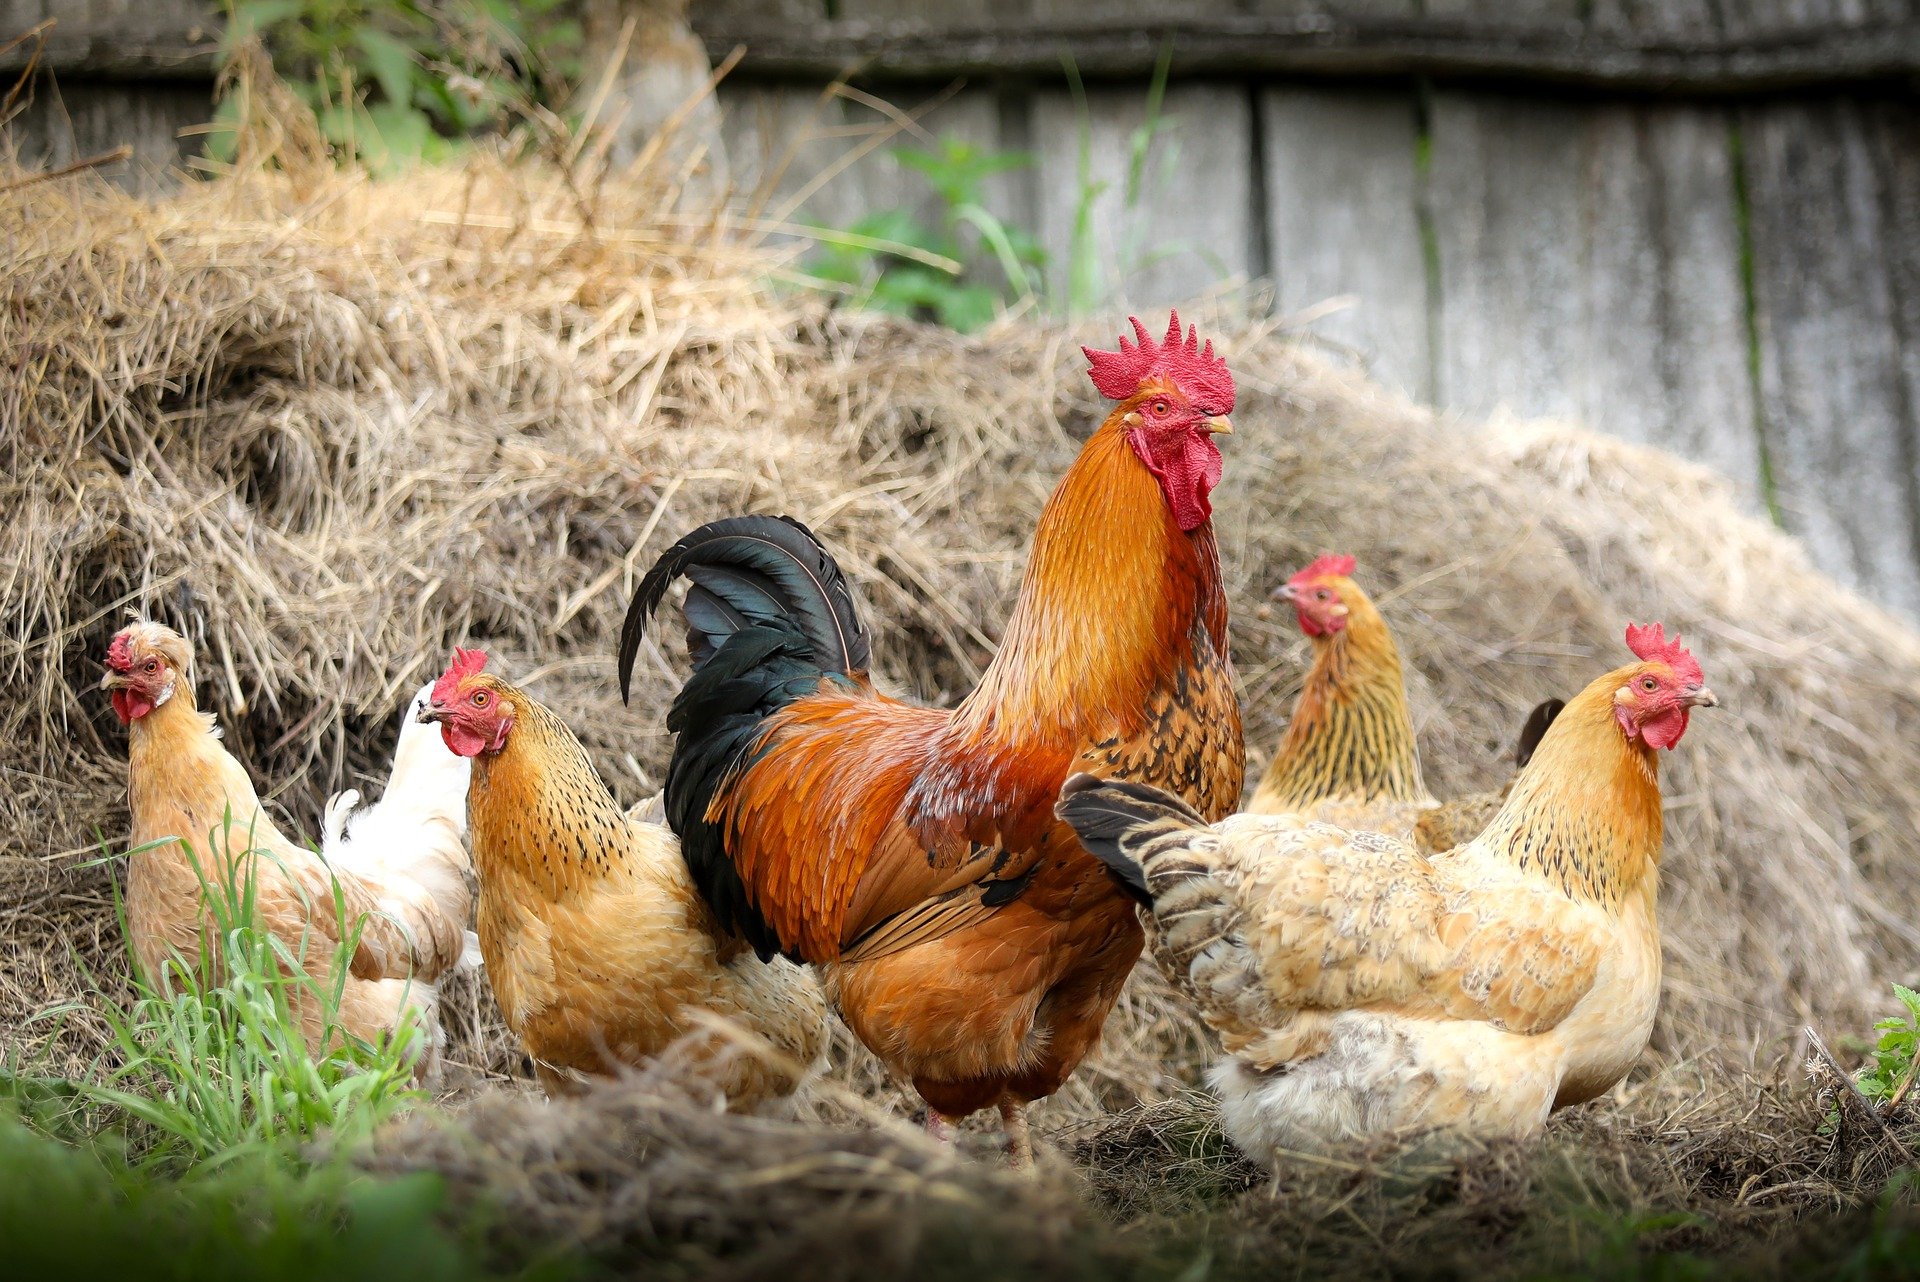 Poultry farming complex